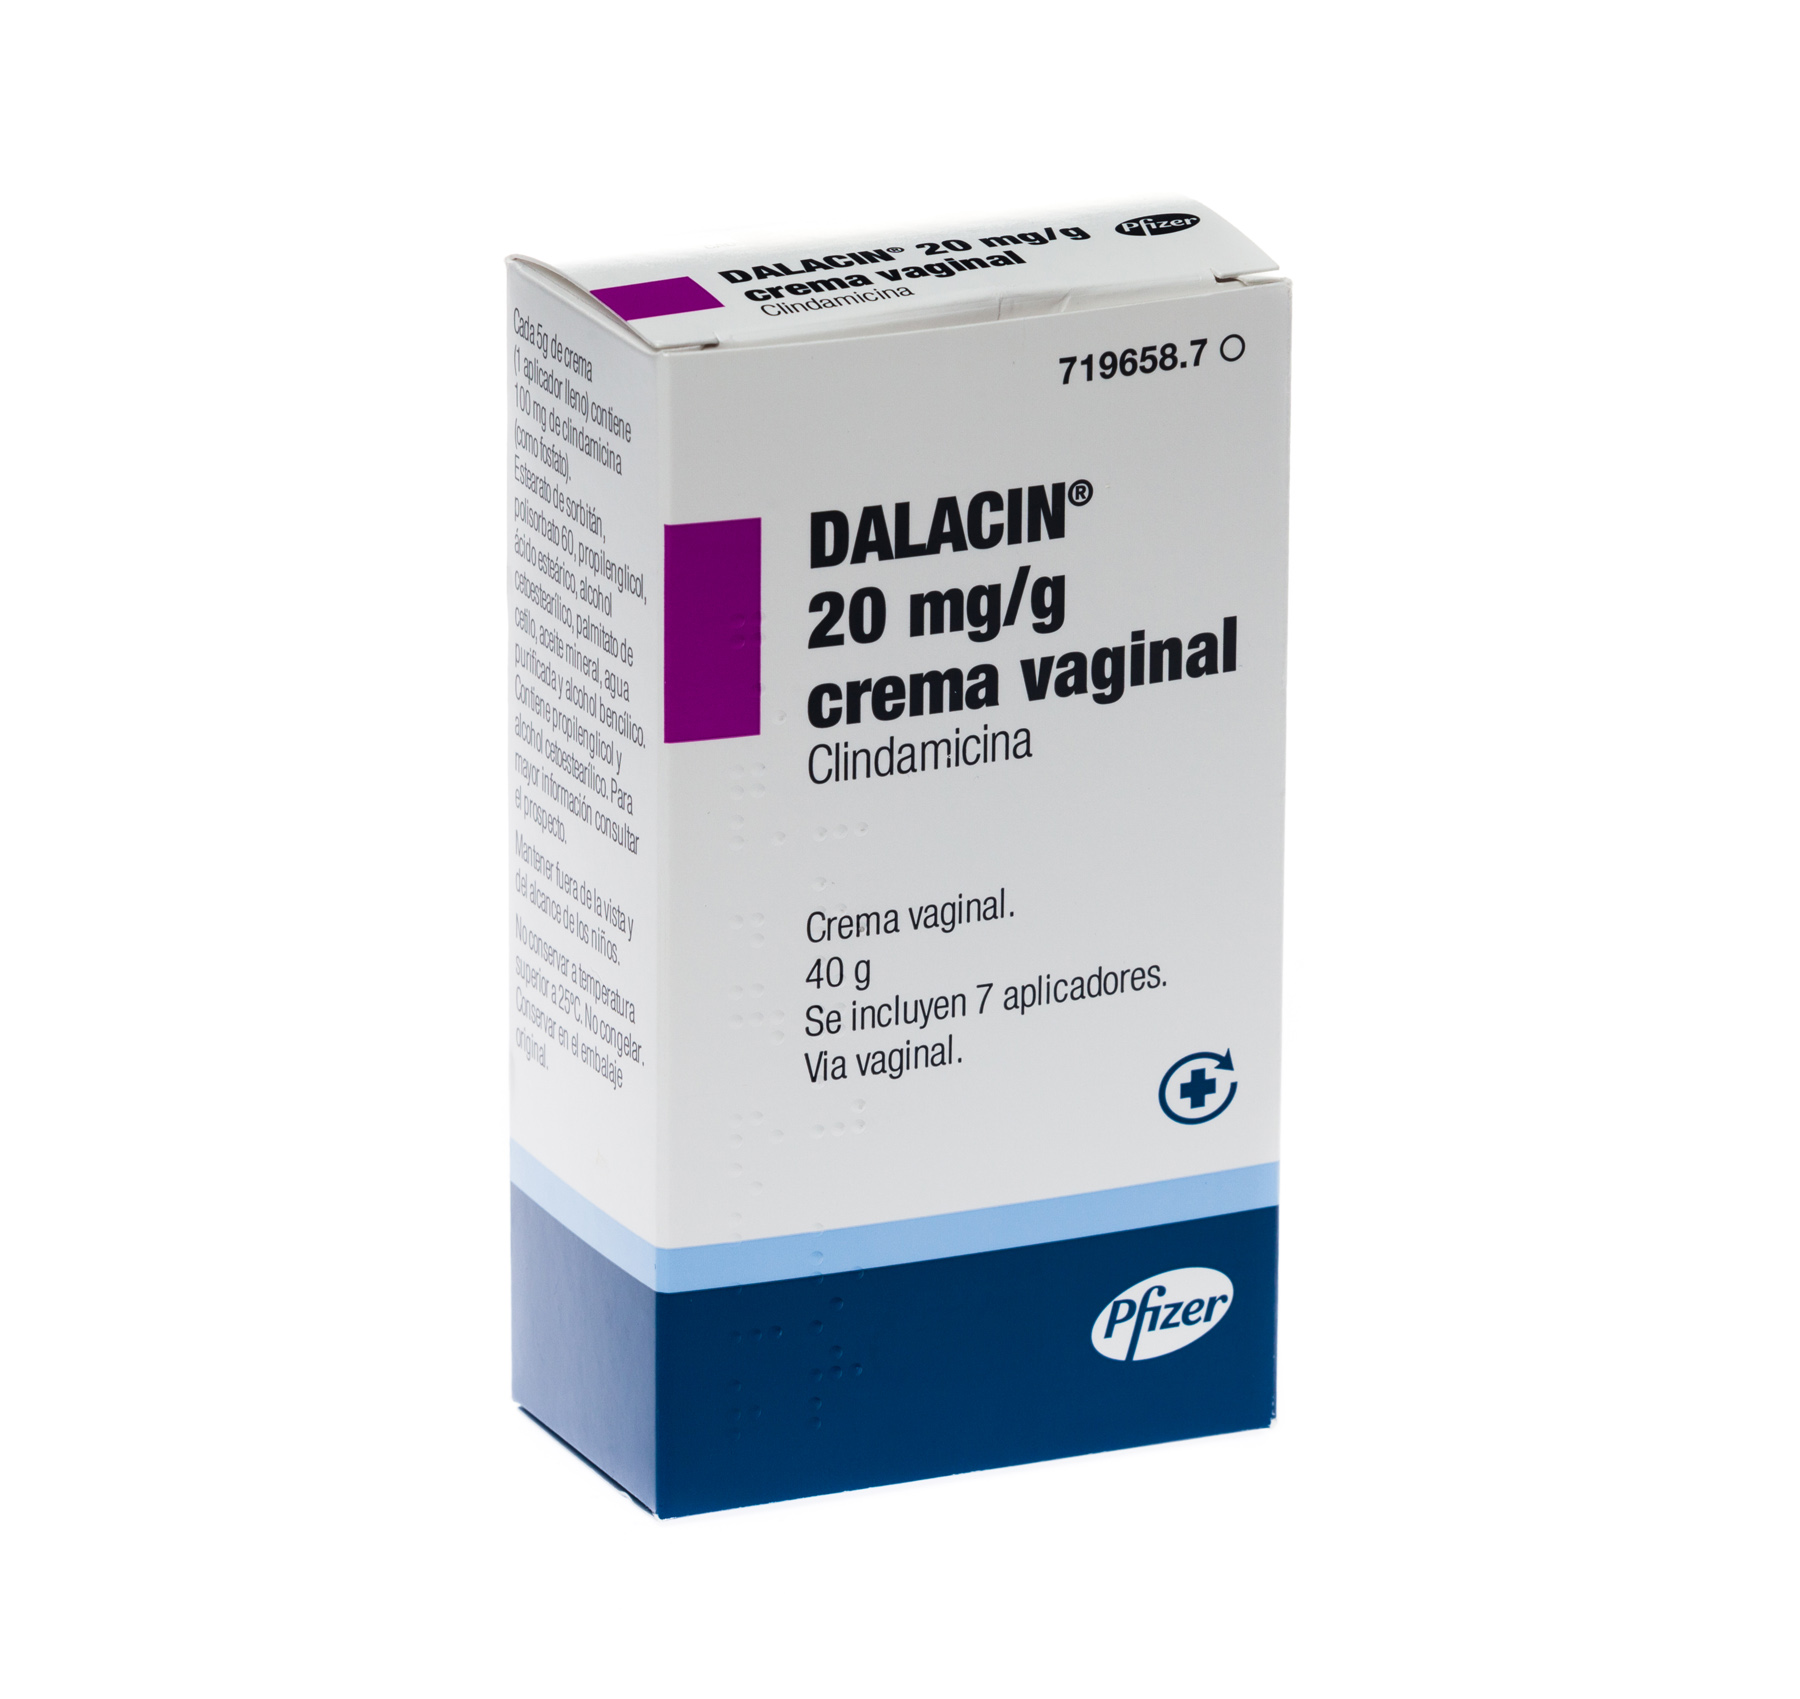 DALACIN 100 mg 3 OVULOS VAGINALES - Farmacéuticos